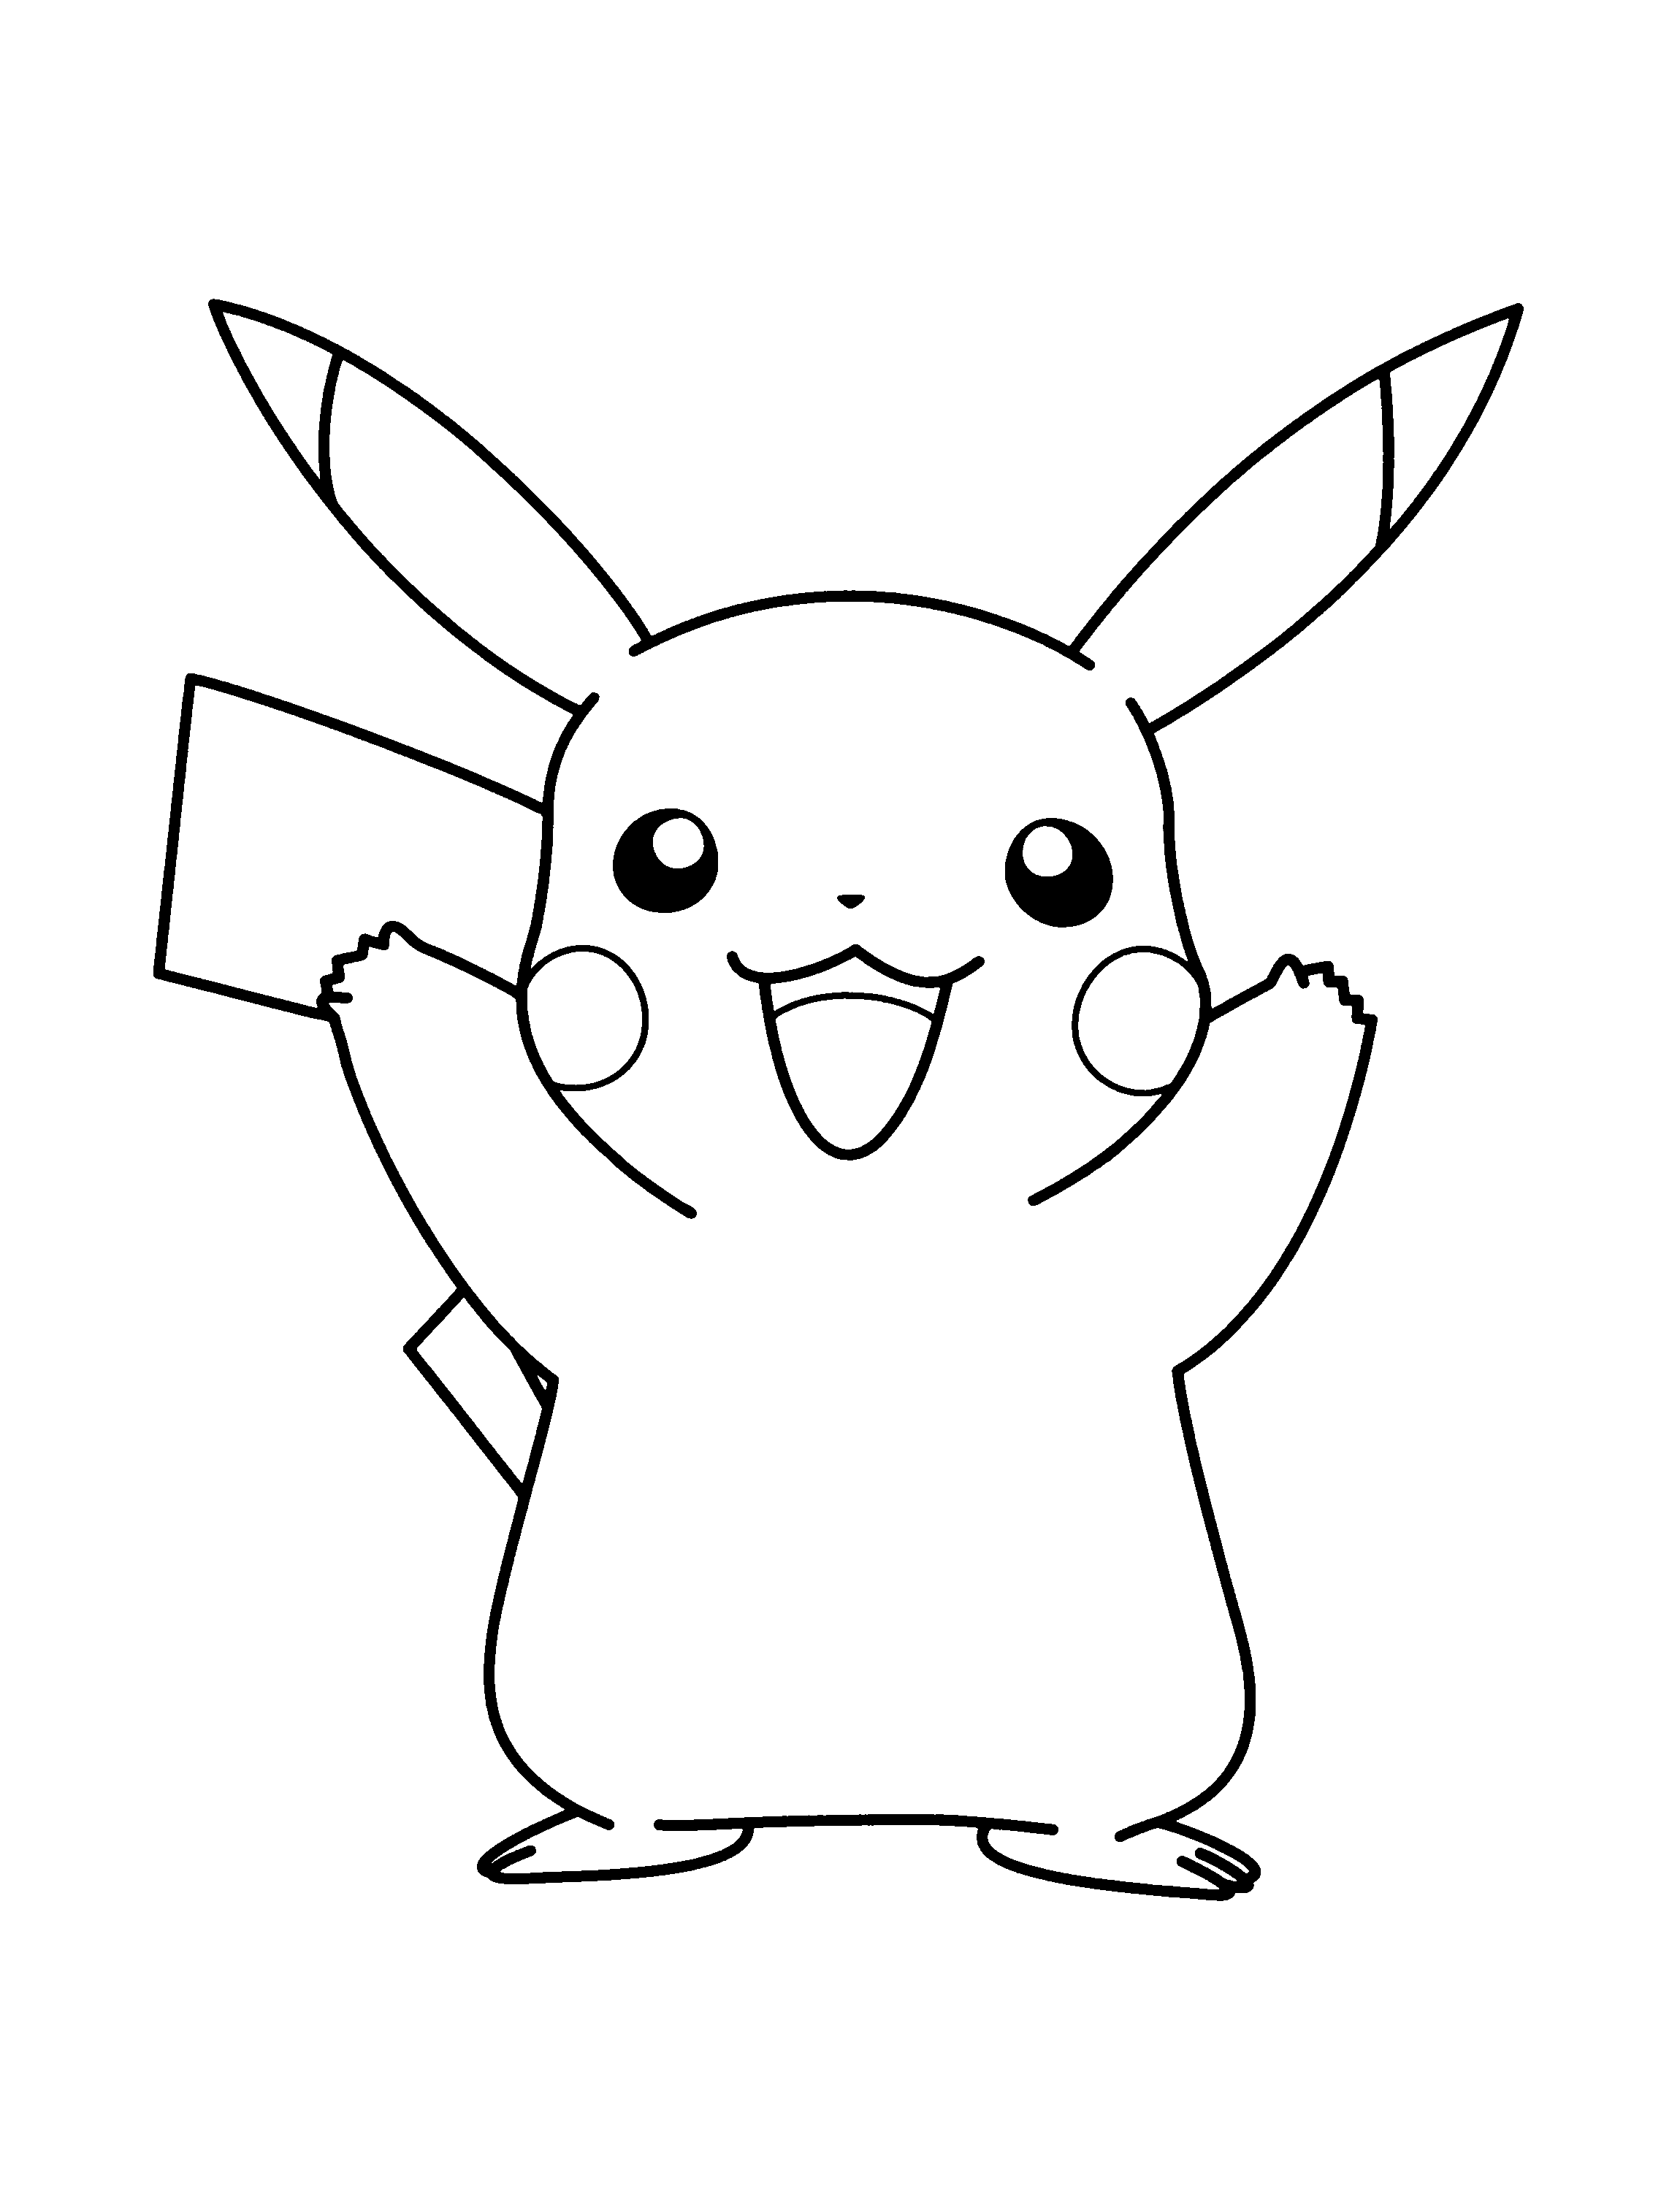 ▷ Dibujos Pikachu para dibujar, imprimir, colorear y recortar fácilmente